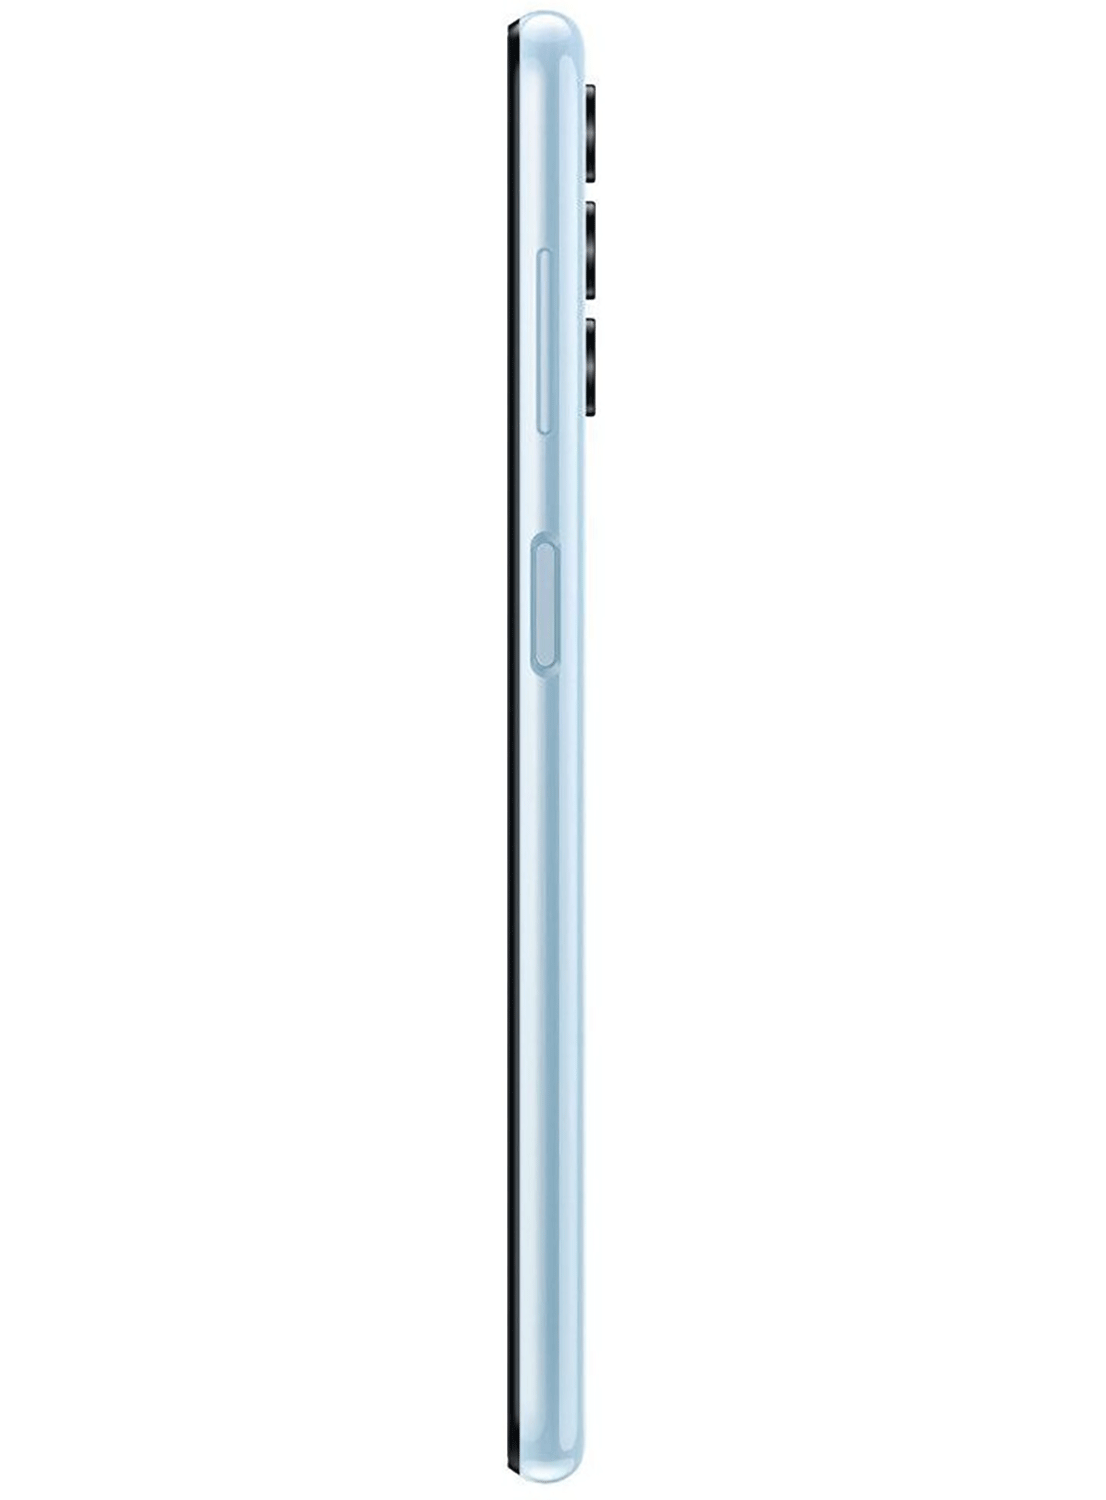 Samsung Galaxy A13 SM-A135F/DS